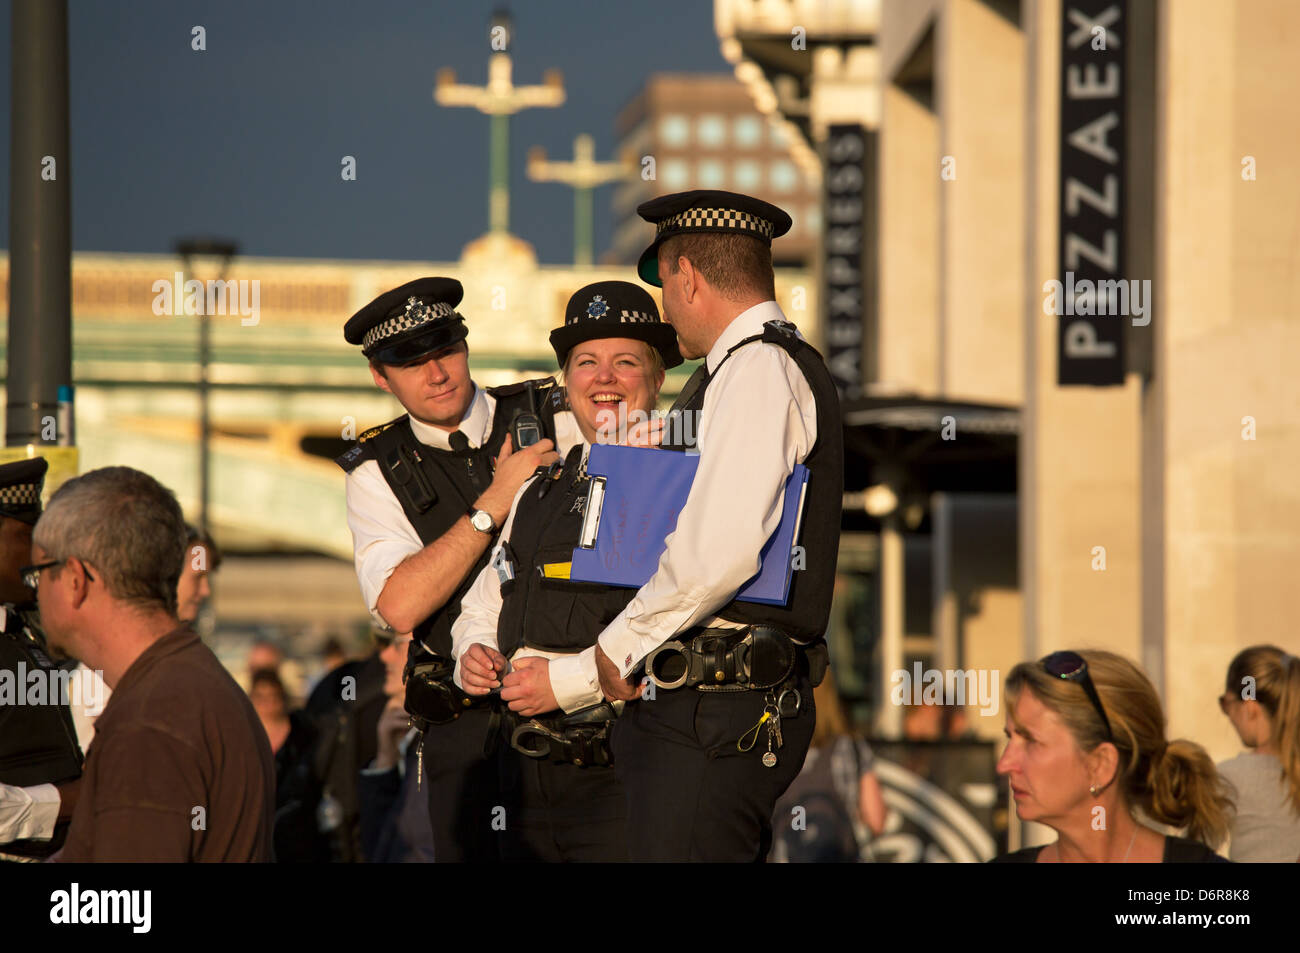 Londres, Royaume-Uni, Bobbies la Police métropolitaine de la supervision d'une petite manifestation Banque D'Images